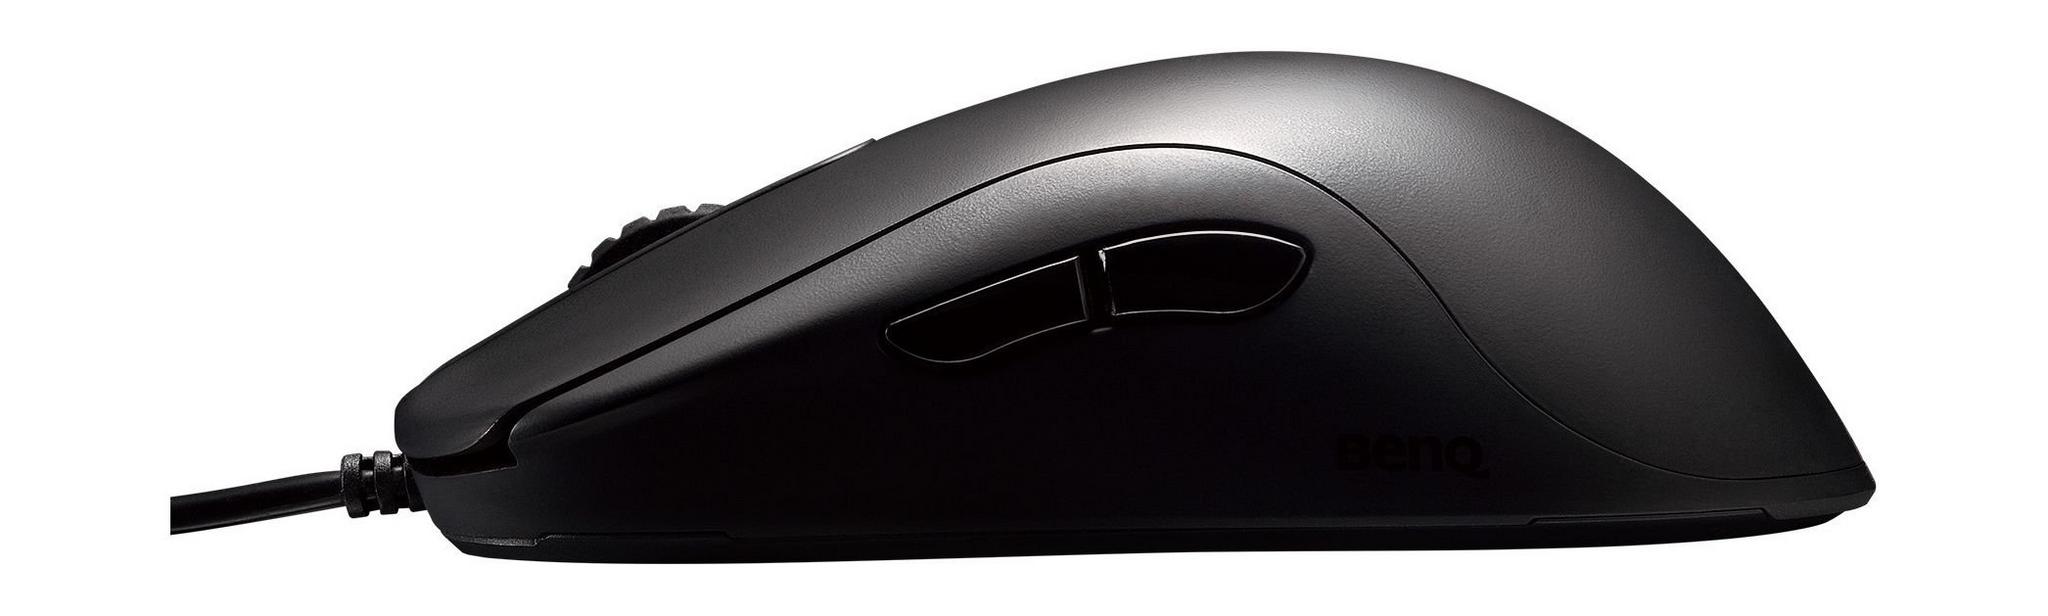 BenQ ZA11 Gaming Mouse Large - Black